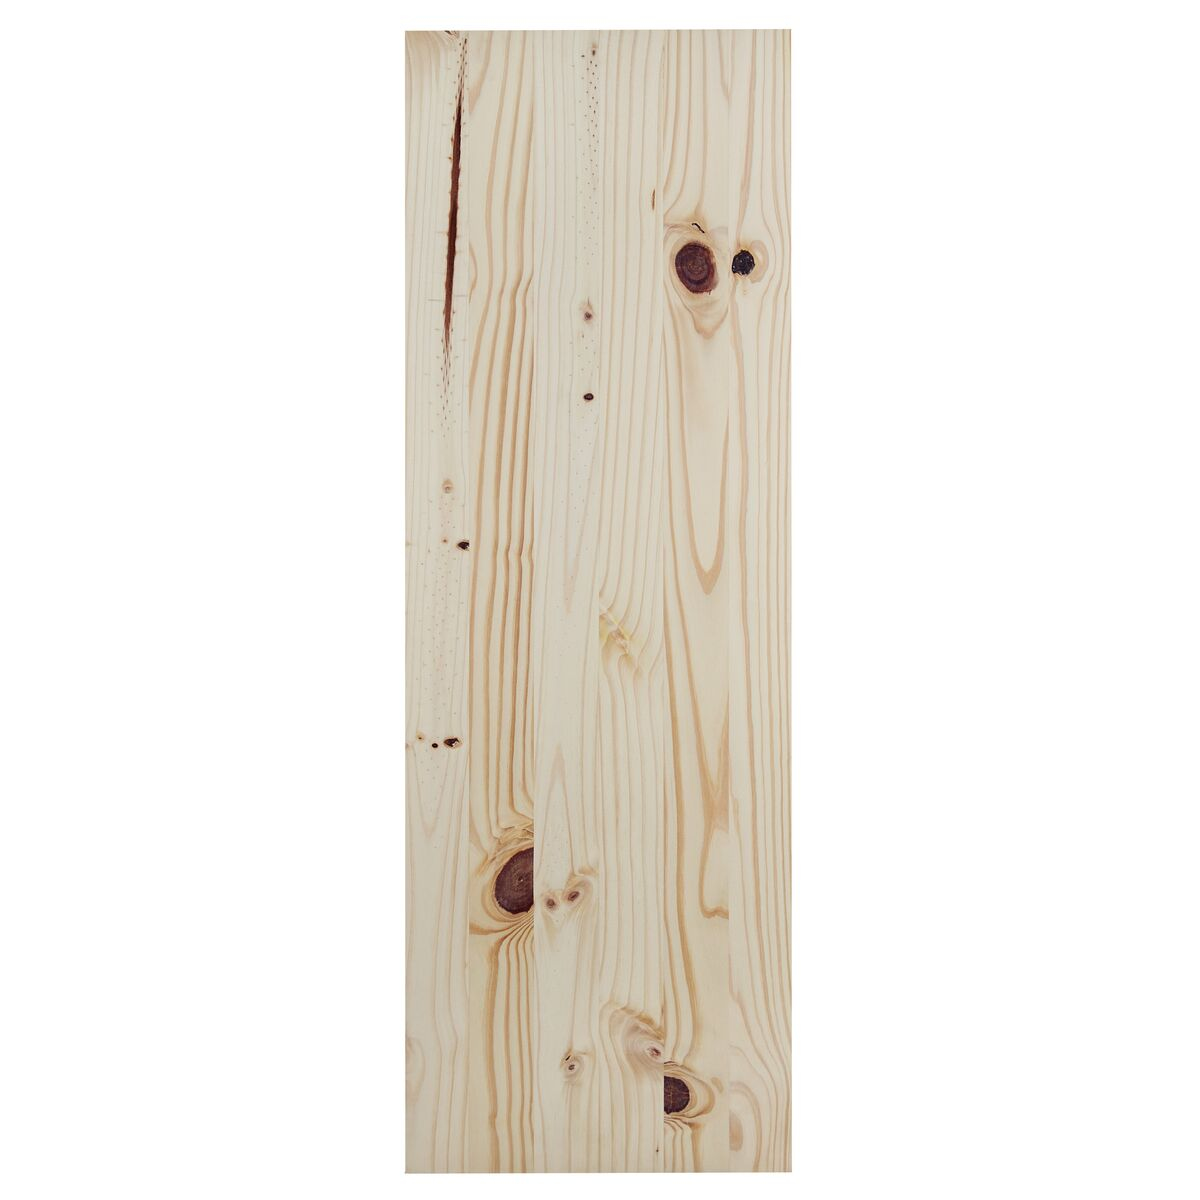 
Painel Tramontina Modulare em Madeira Pinus com Acabamento Natural CC 1000x400x18 mm
